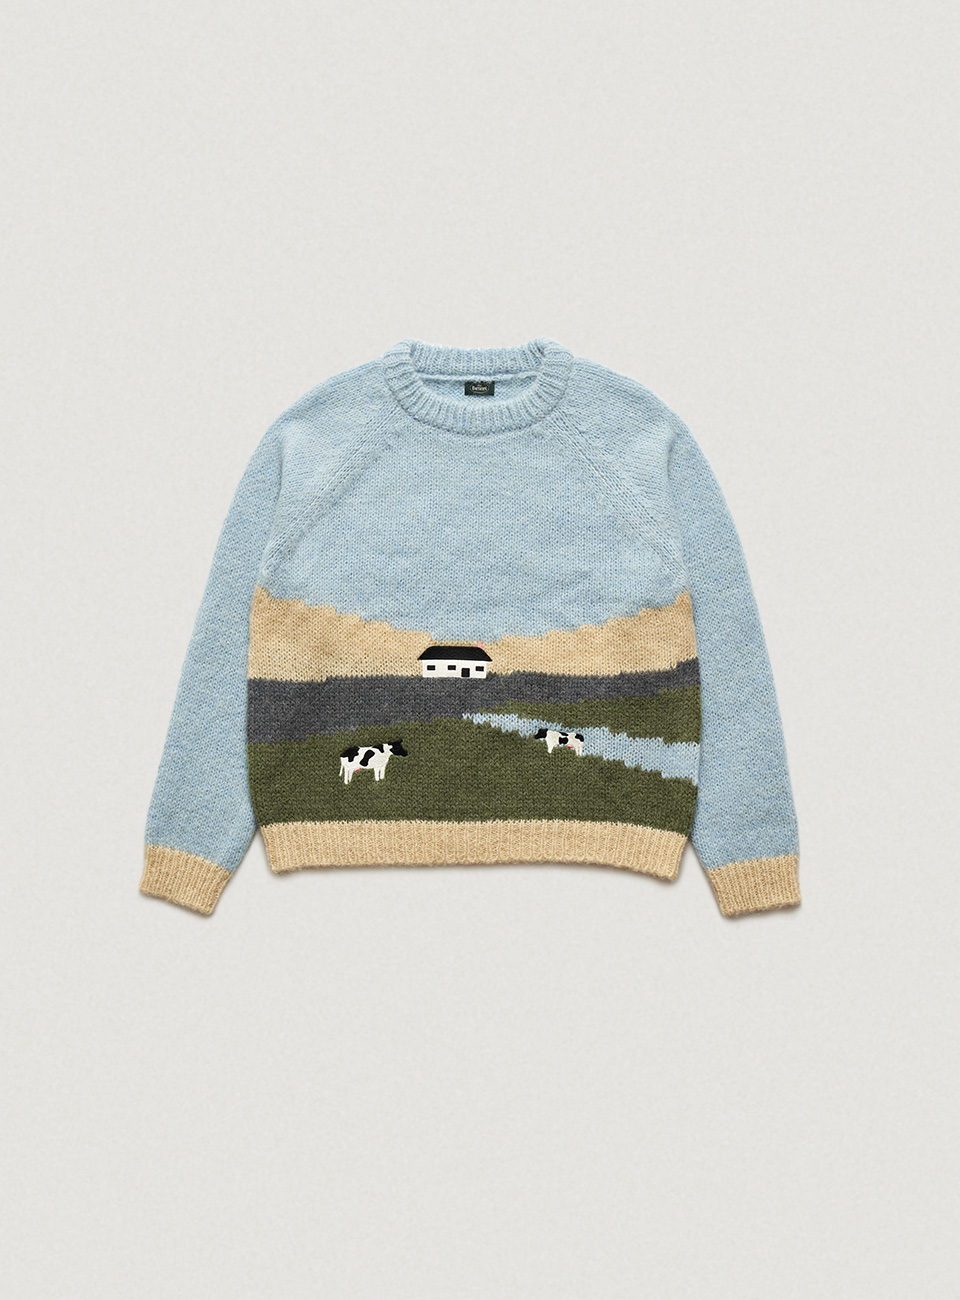 Farm Landscape Intarsia Knit Sweater [4월 초 순차 배송]